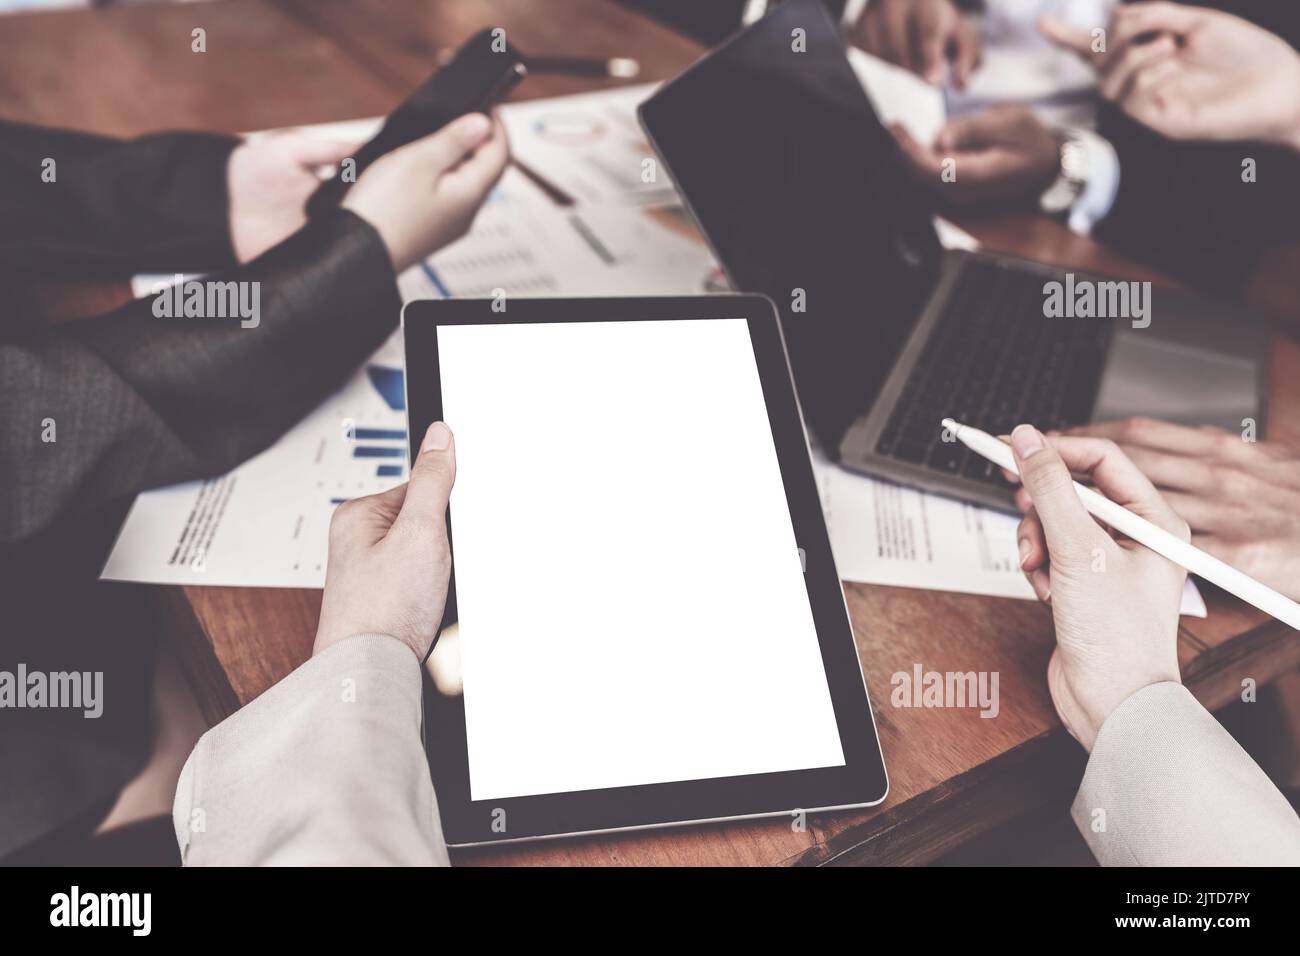 Personne d'affaires et comptable utilisant une tablette avec écran vide dans la salle de réunion Banque D'Images